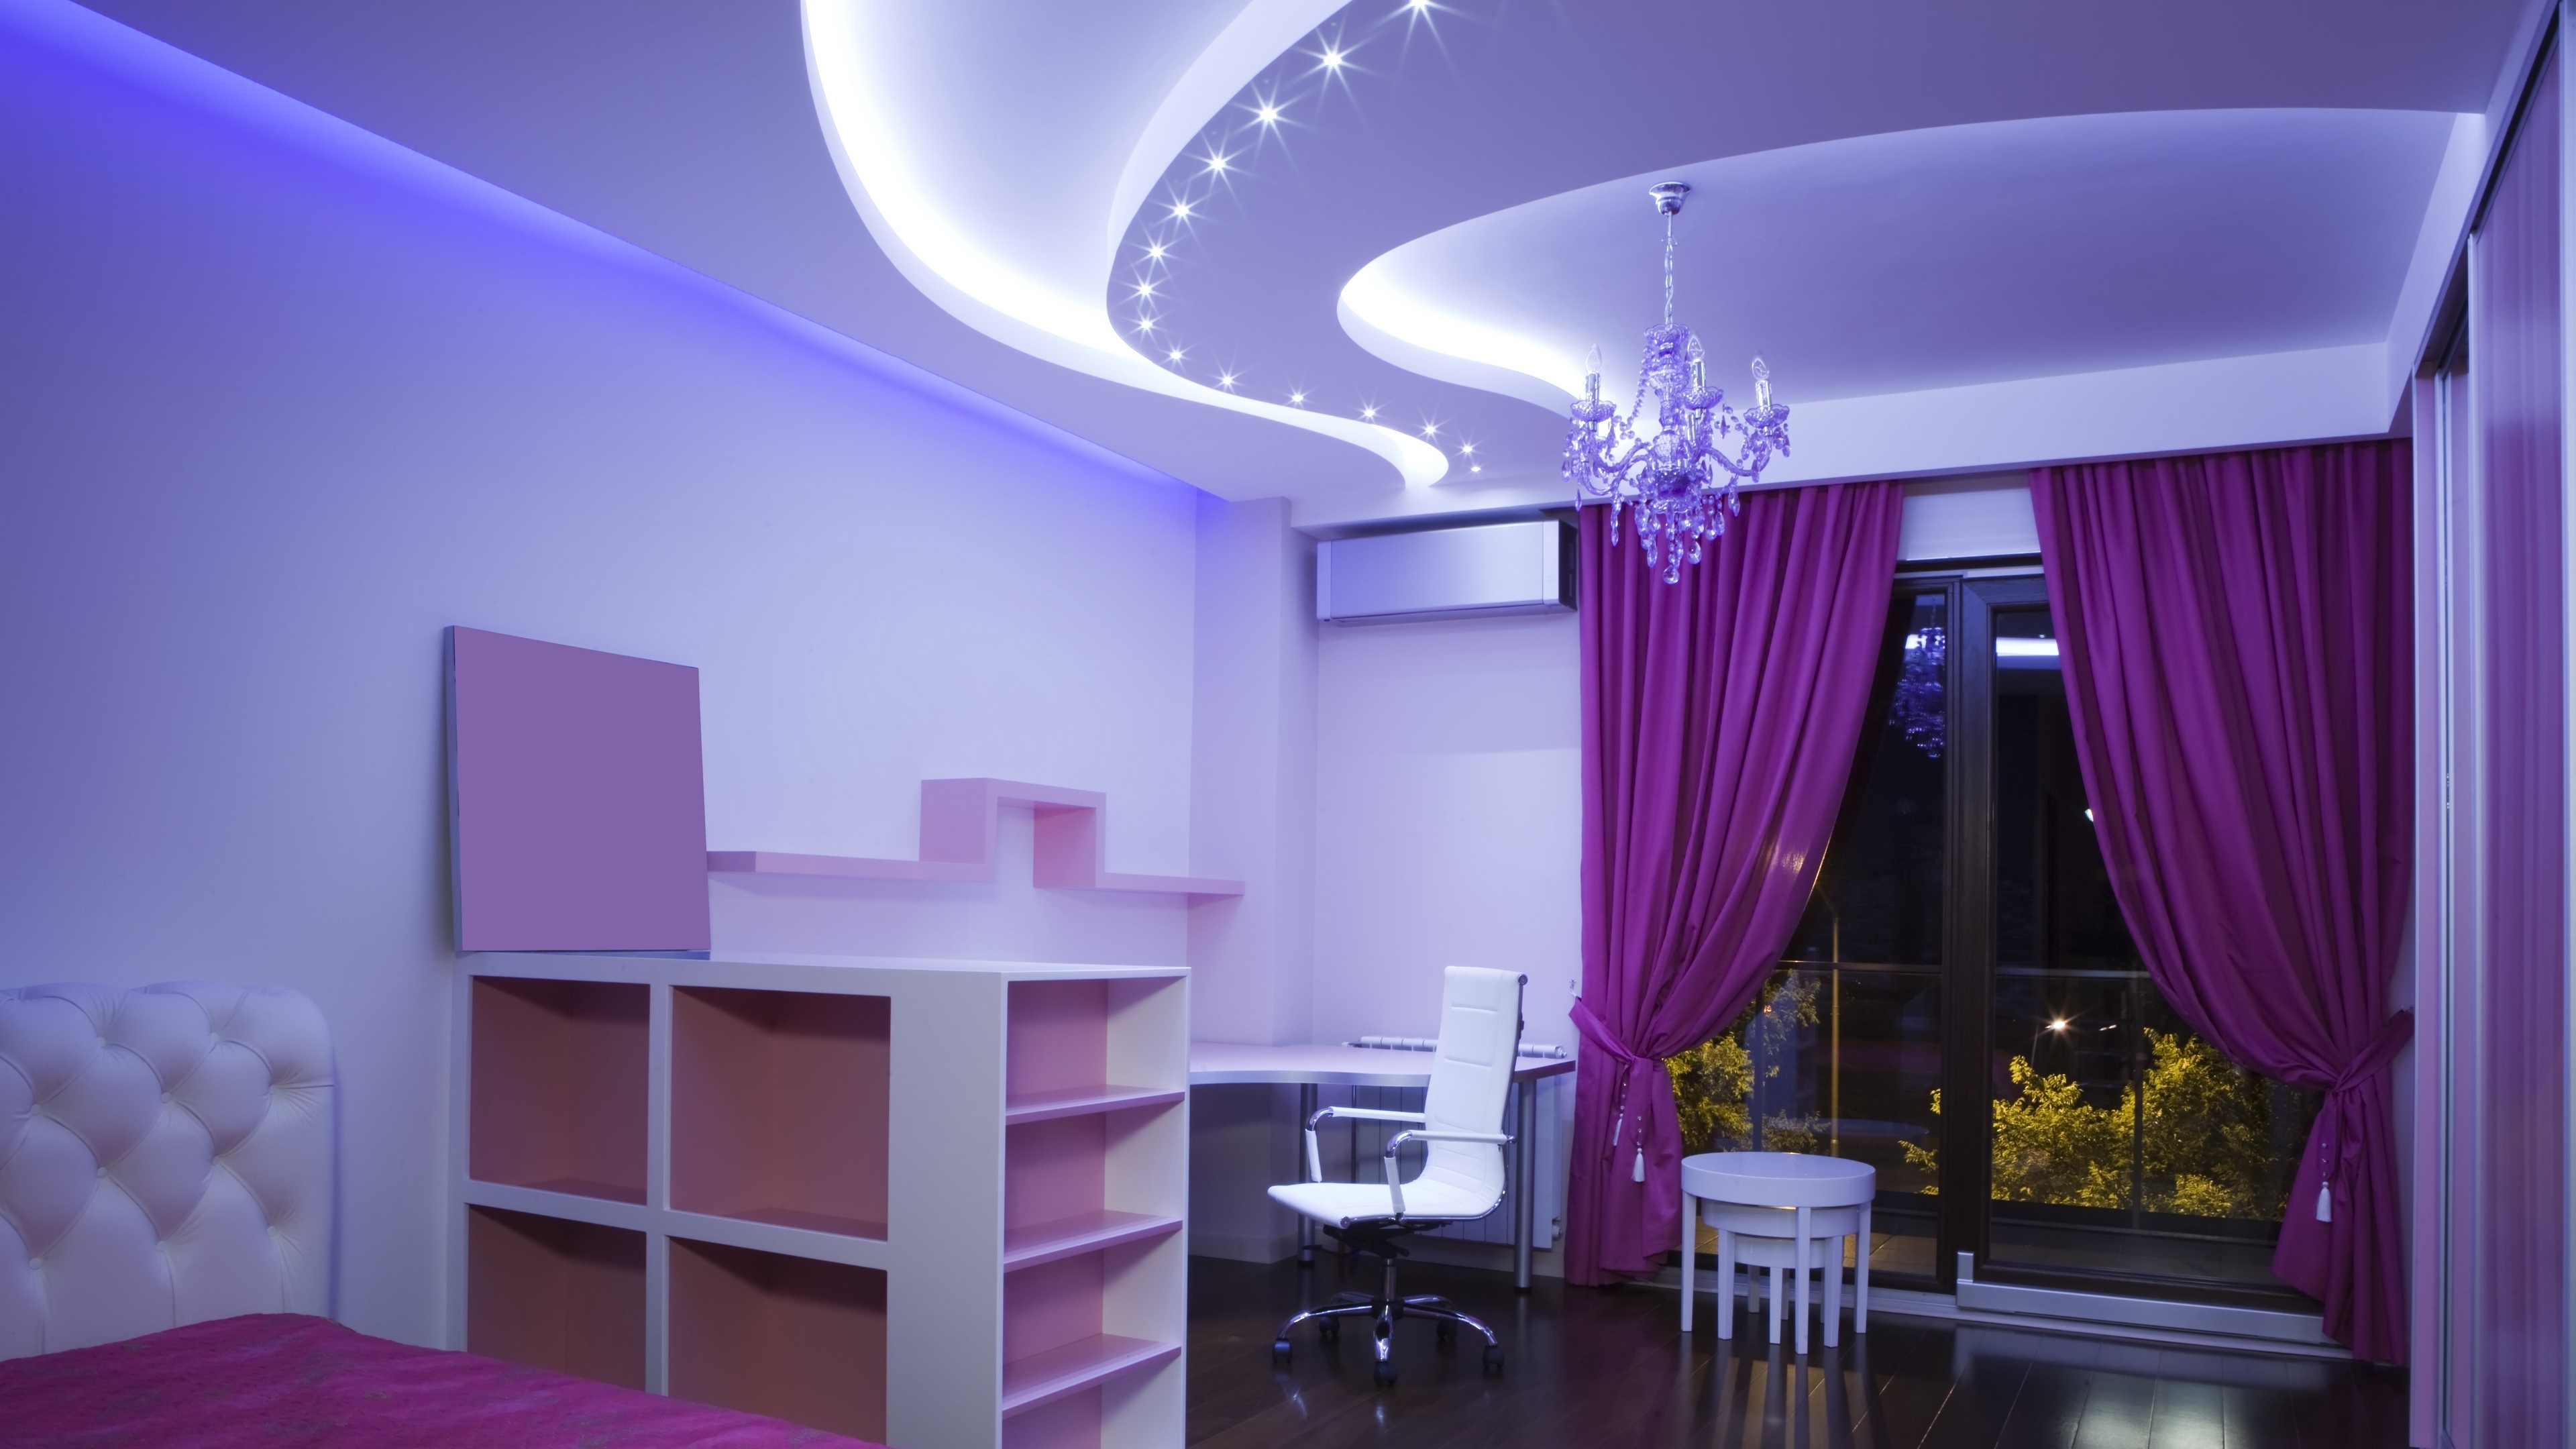 Wallpaper Room, Lighting, Nice, Cozy - Bedroom Beautiful Ceiling Design - HD Wallpaper 